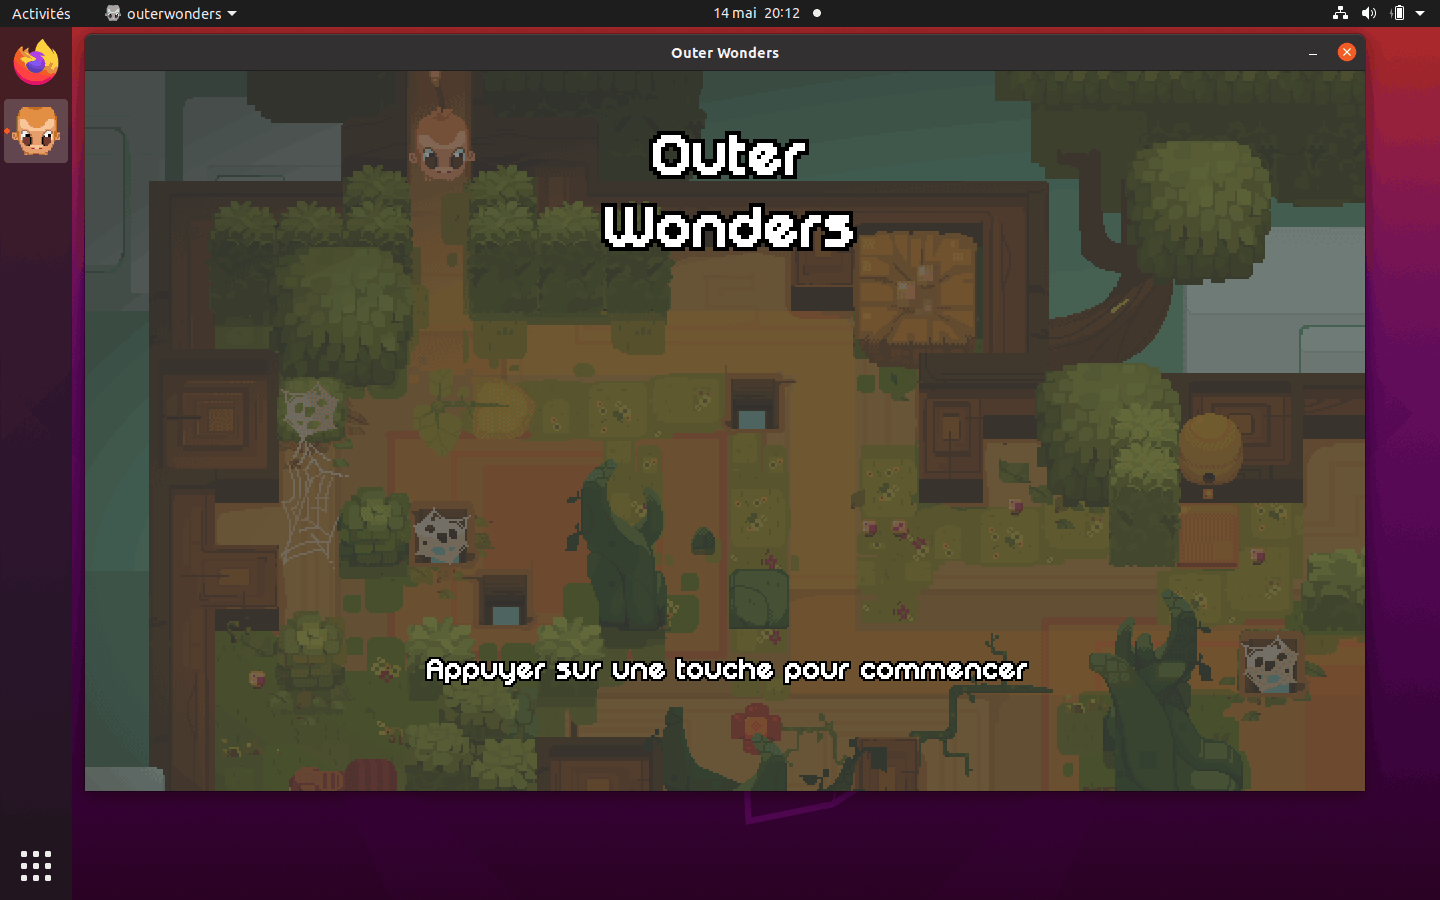 Capture d'écran du bureau d'Ubuntu, avec une fenêtre affichant l'écran-titre d'Outer Wonders.